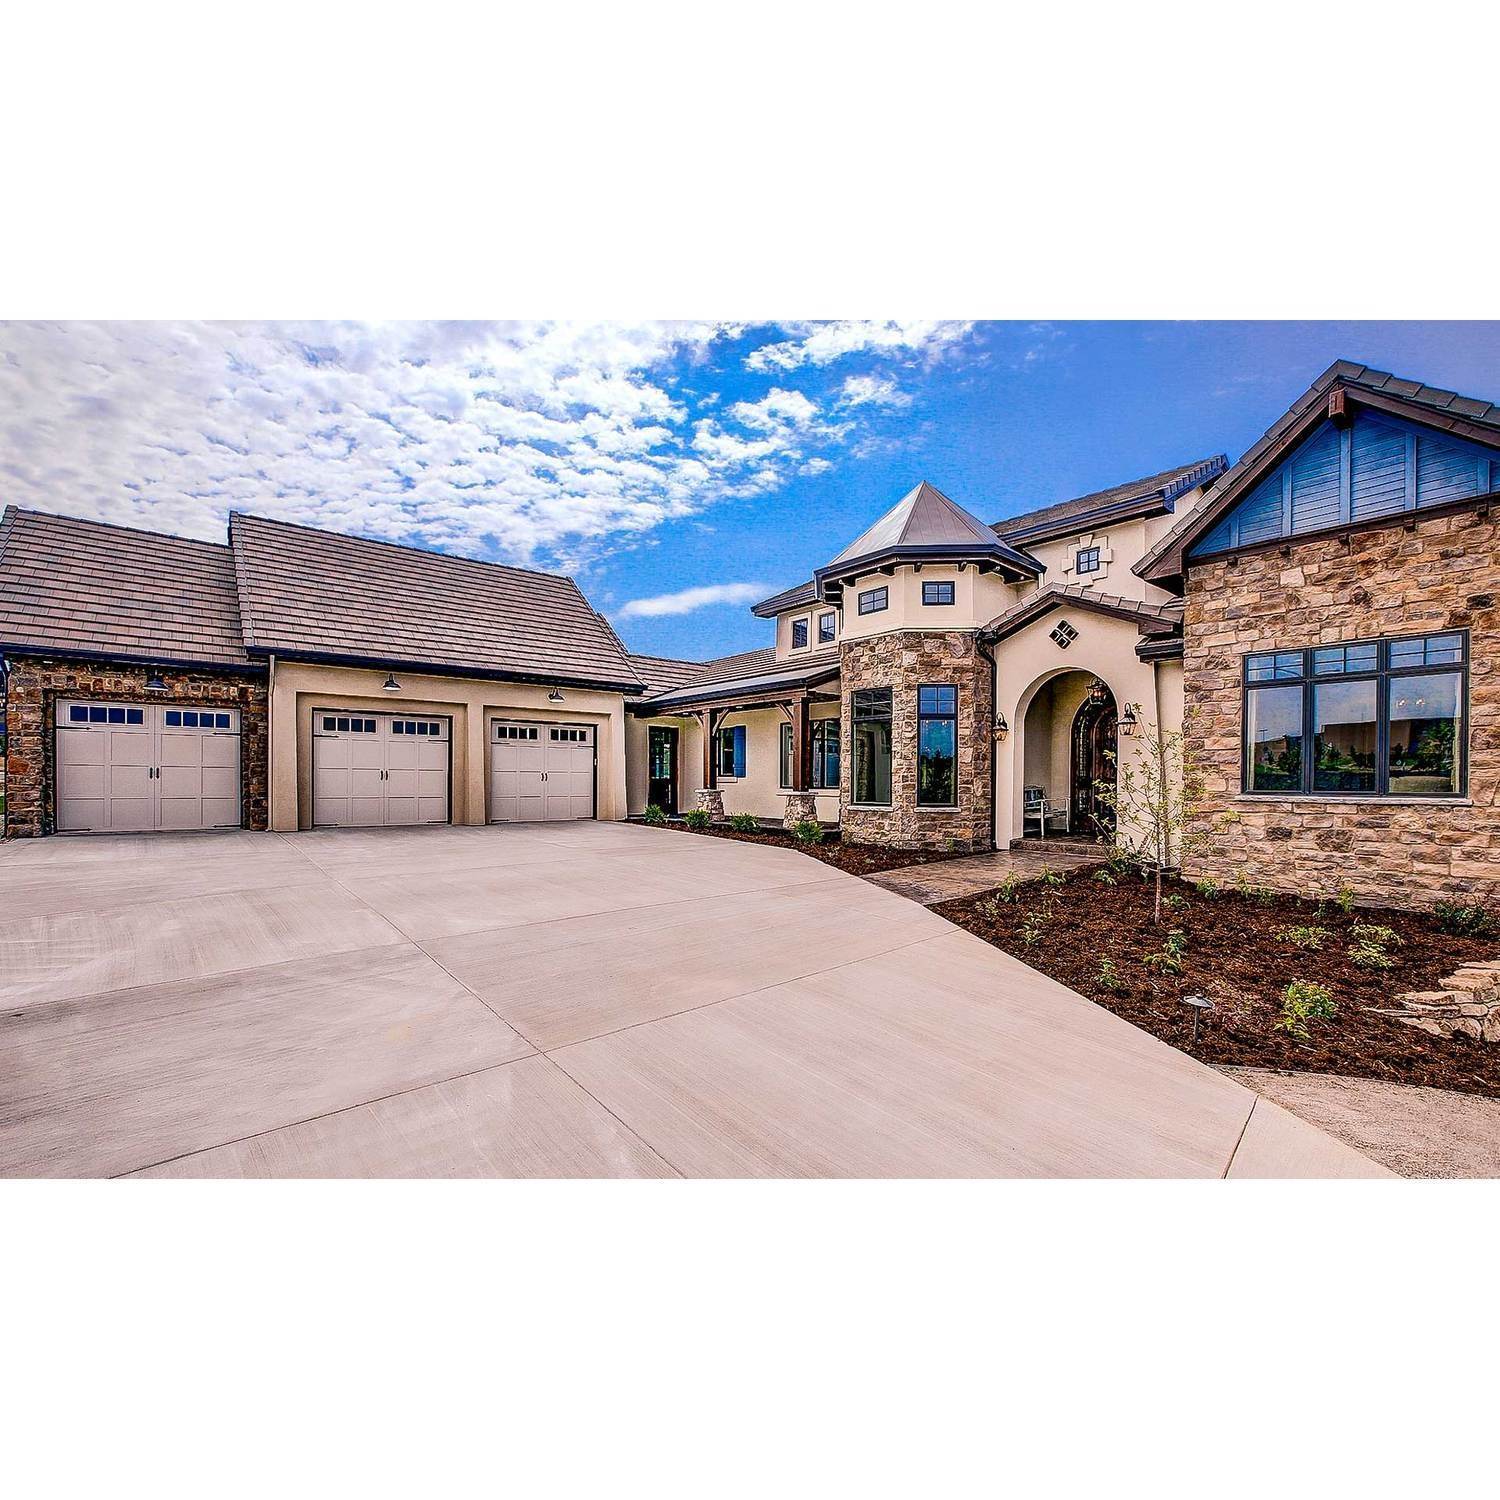 16. Galiant Homes здание в 4783 Farmingdale Dr, Colorado Springs, CO 80918